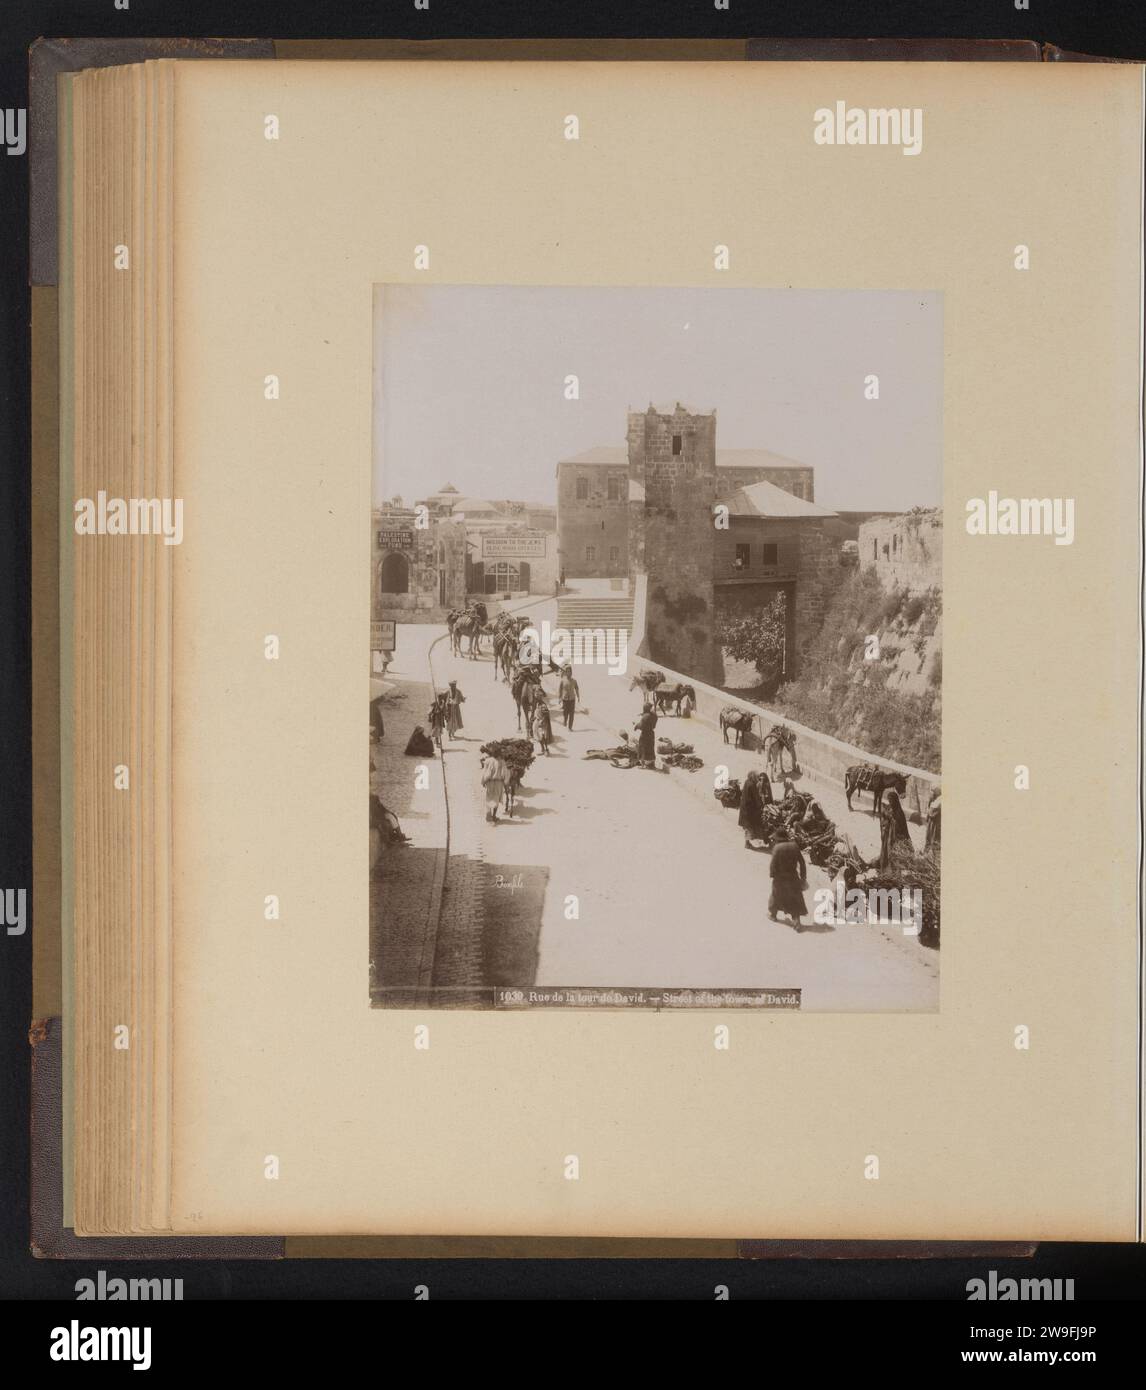 Straße in Jerusalem zum Phasaël-Turm, Félix Bonfils, 1867 - 1885 Foto dieses Foto ist Teil eines Albums. Jerusalem Papier Albumen drucken Straße. Türme  befestigte Stadt Phasael Stockfoto